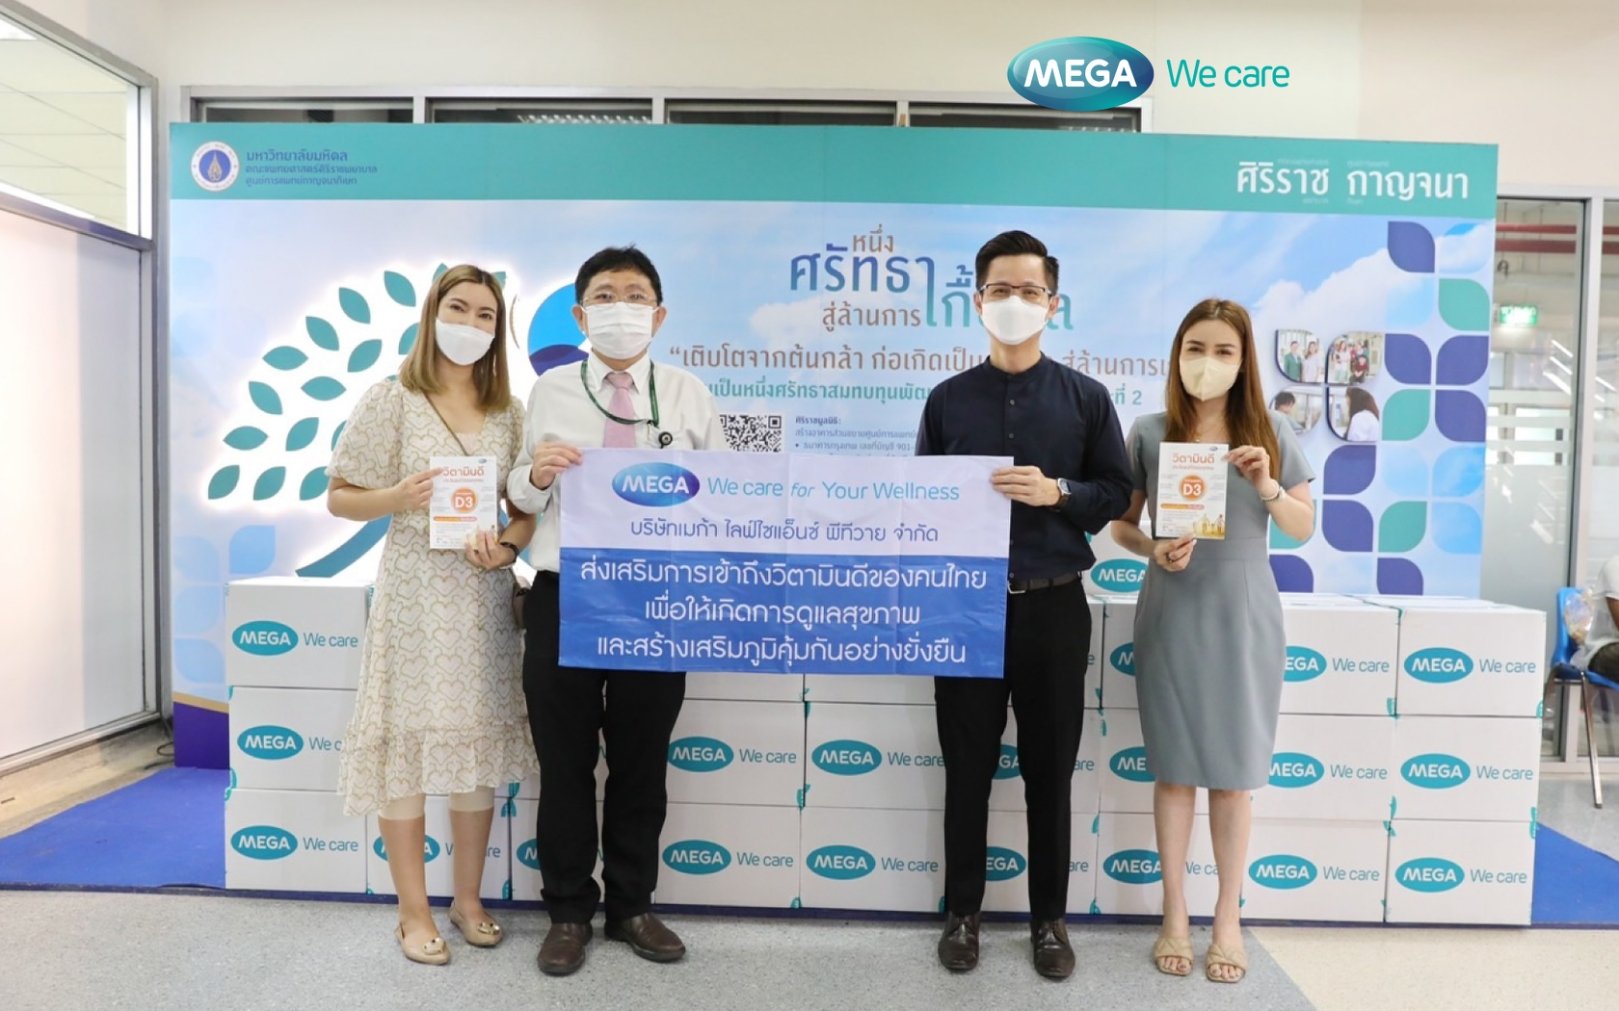 MEGA We care กับโครงการ “ส่งเสริมการเข้าถึงวิตามินดีของคนไทยเพื่อให้เกิดการดูแลสุขภาพ และสร้างเสริมภูมิคุ้มกันอย่างยั่งยืน”